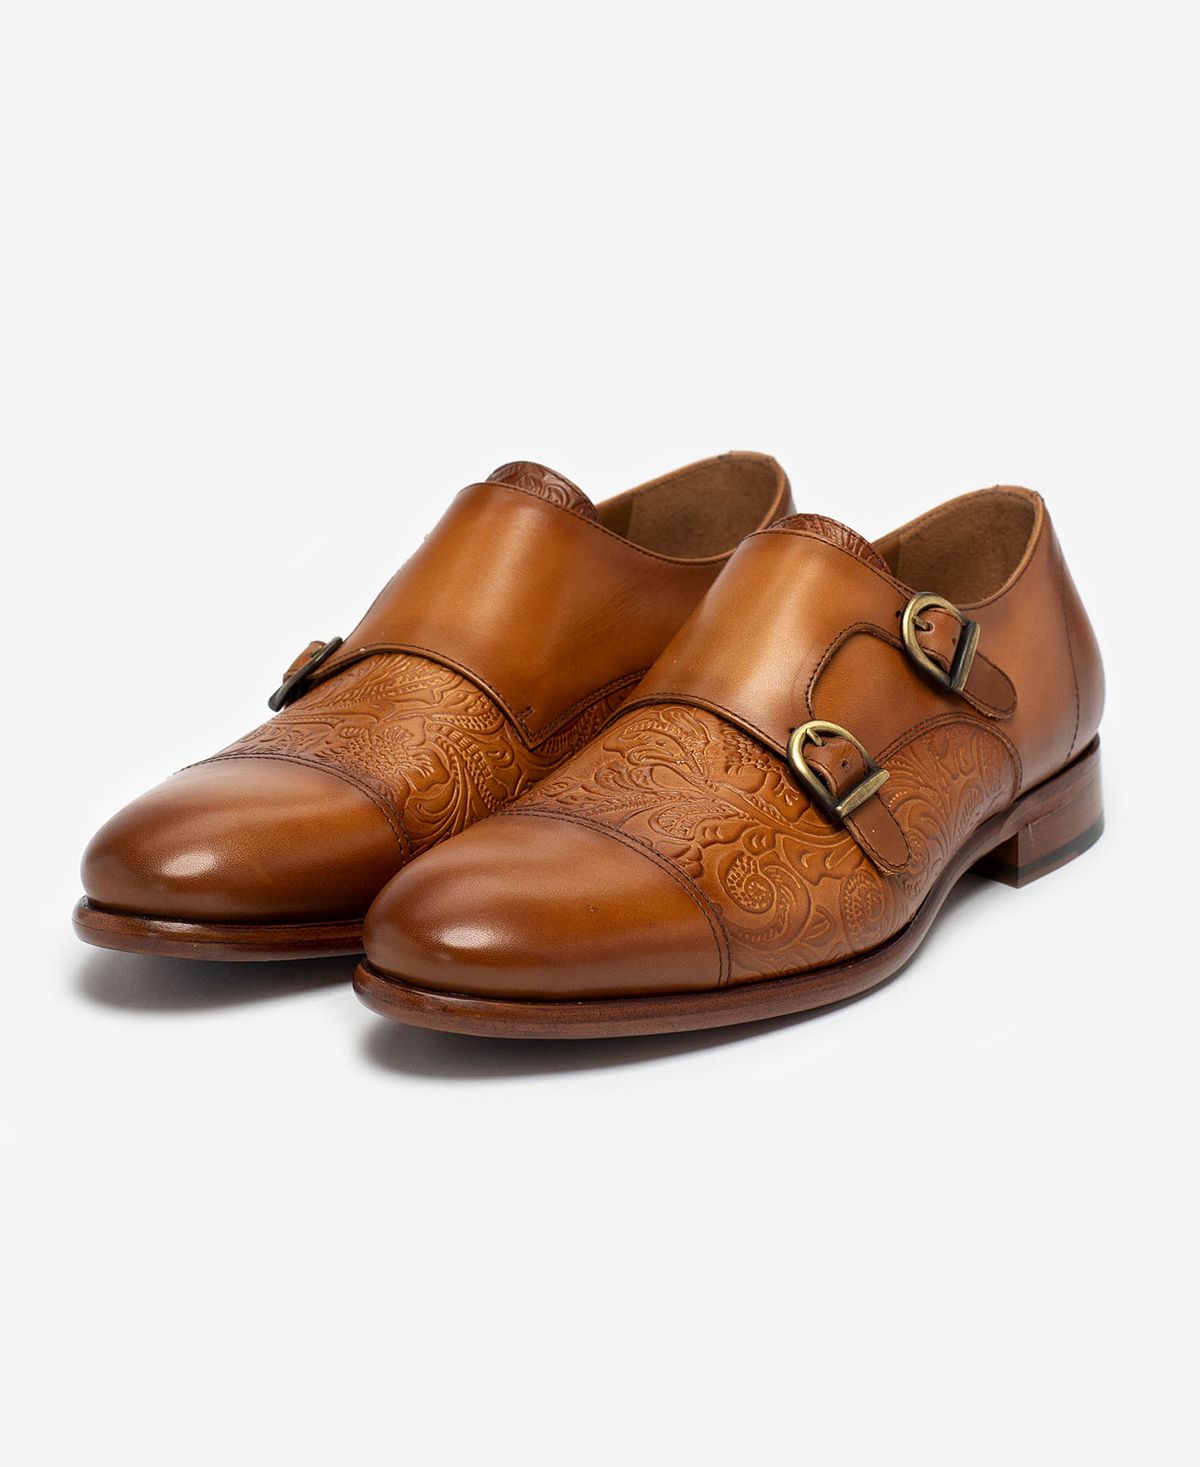 Мужские модельные туфли lucca с тиснением и цветочным принтом на ремешках из кожи Taft, мульти